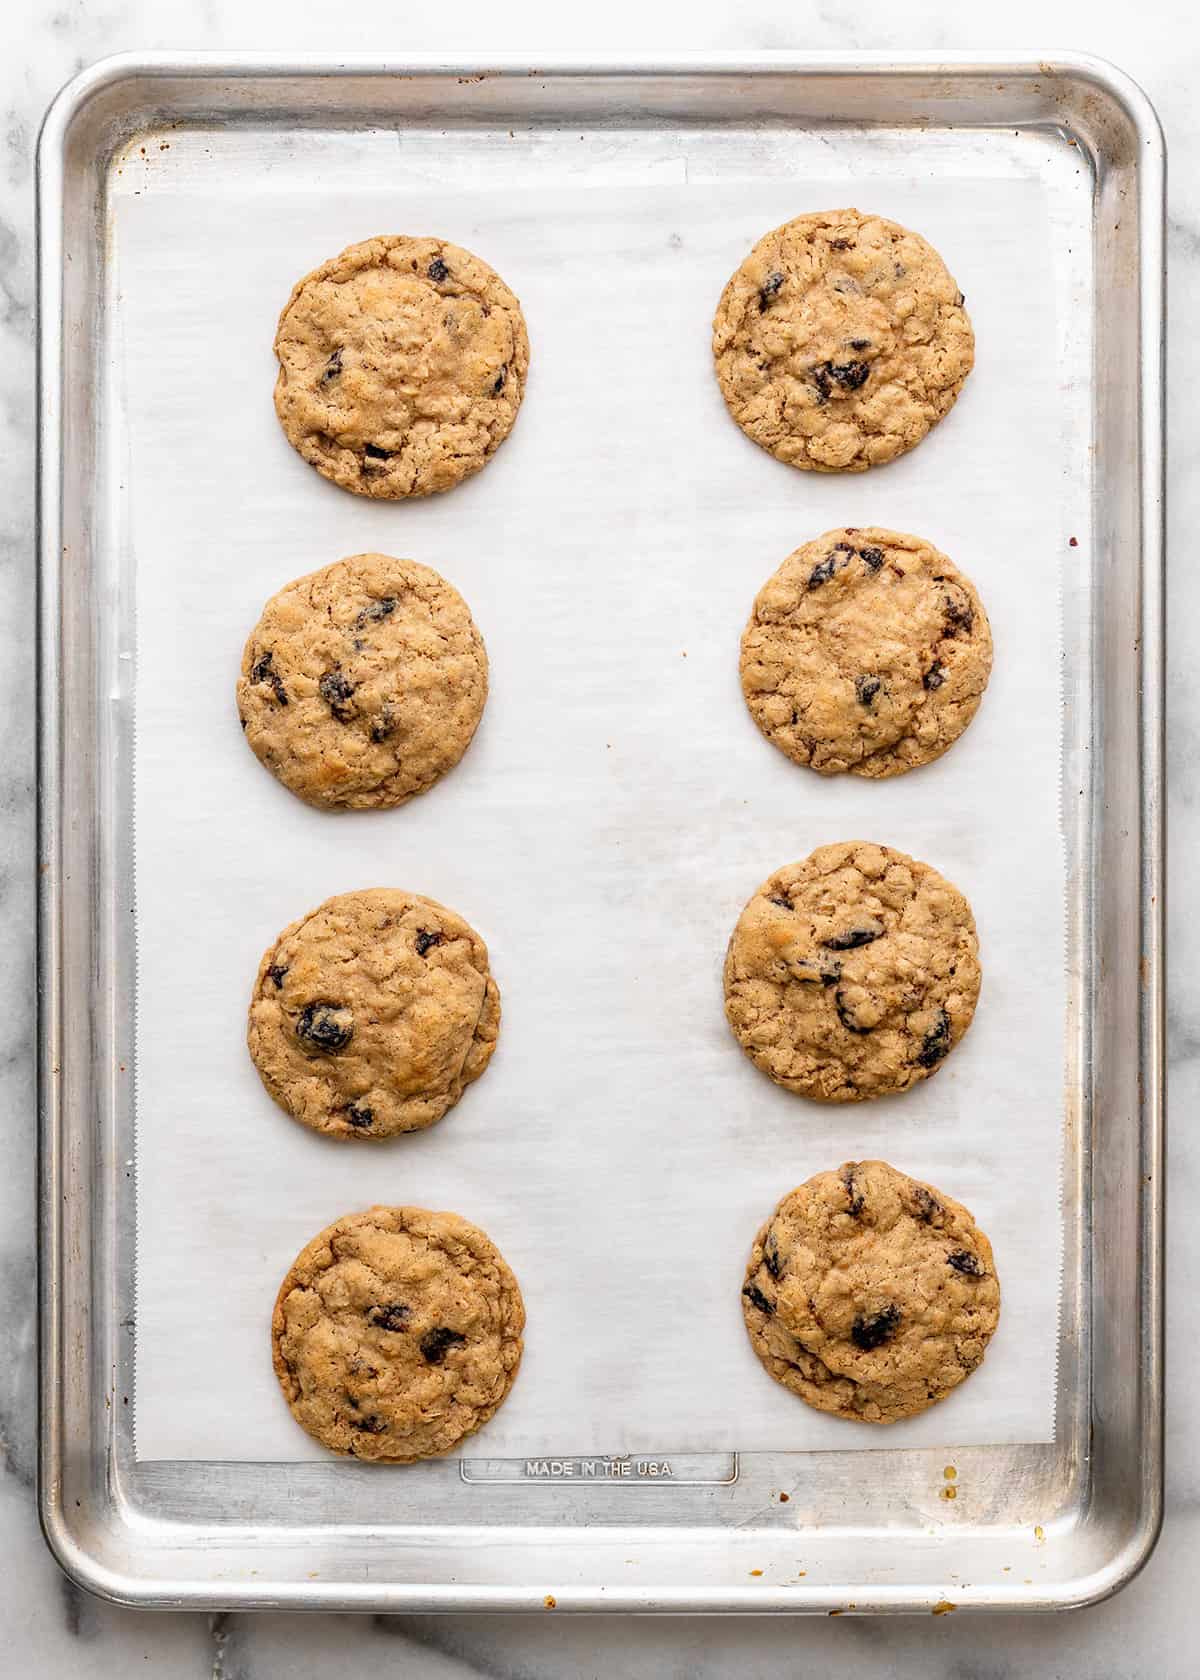 8 Oatmeal Raisin Cookies on a baking sheet